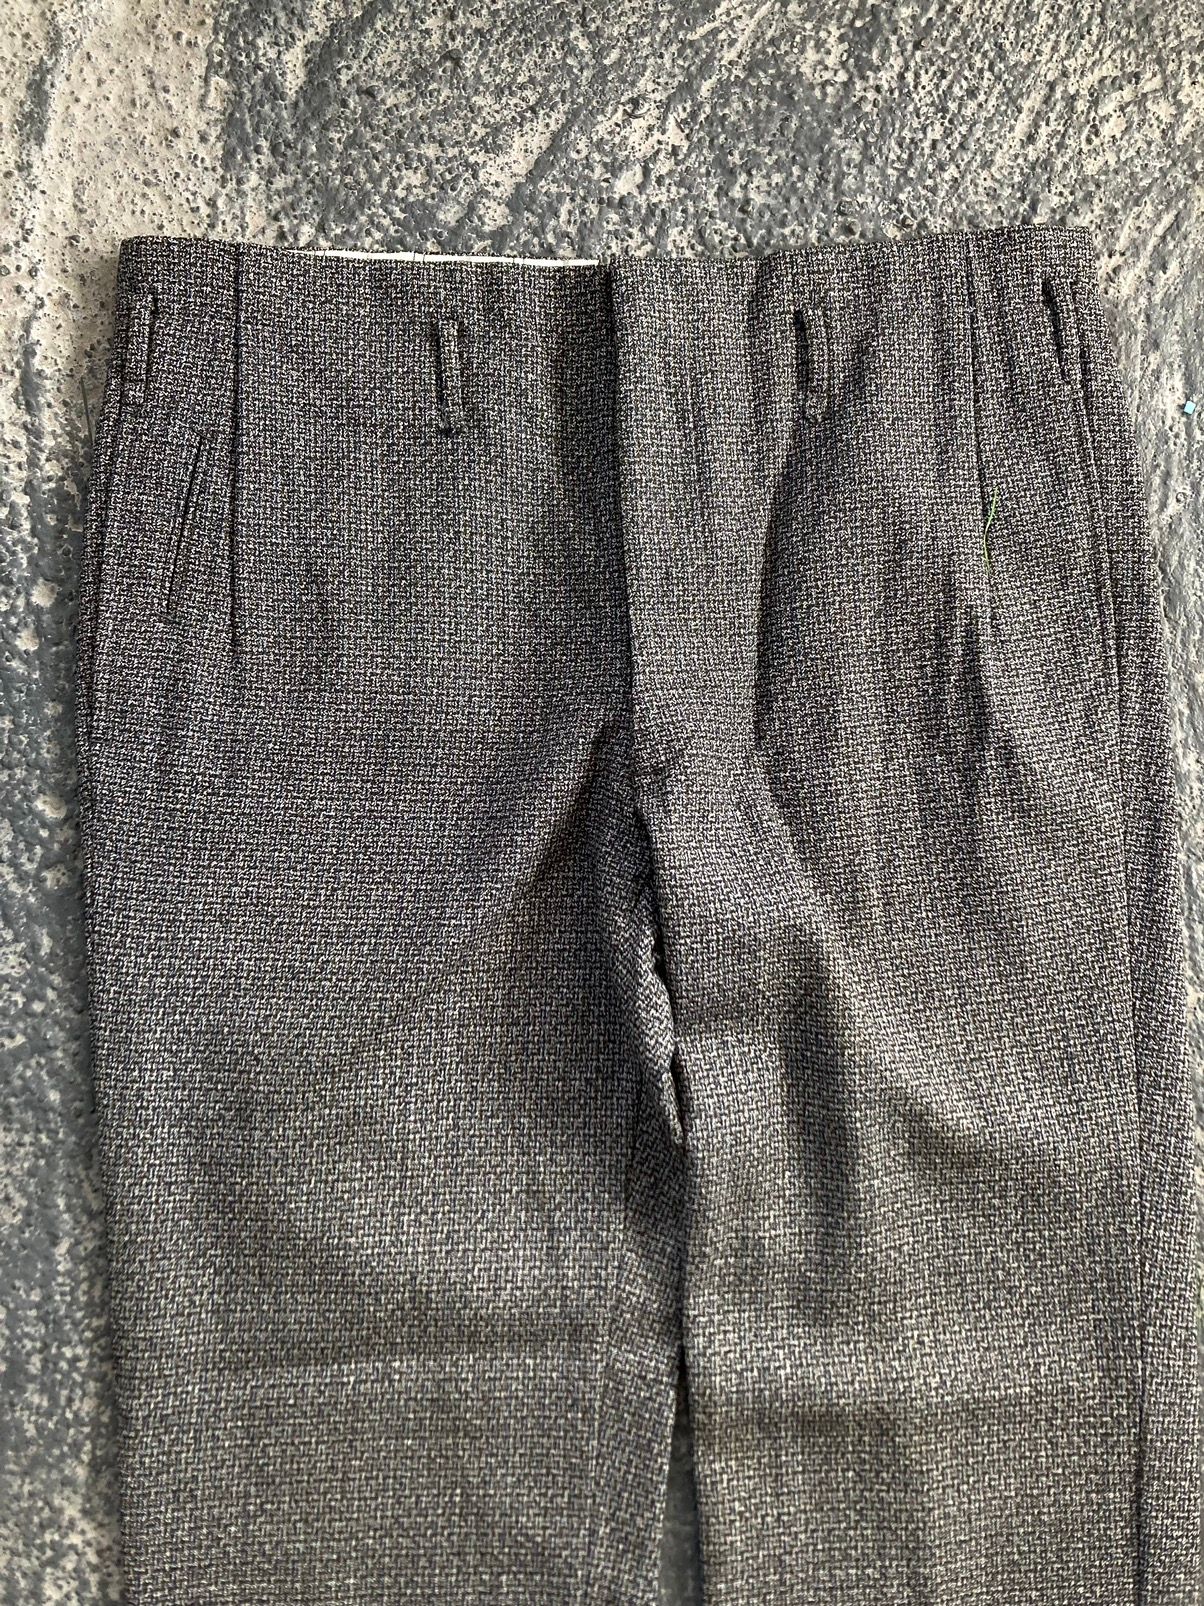 Vintage Tweed Trousers - 3